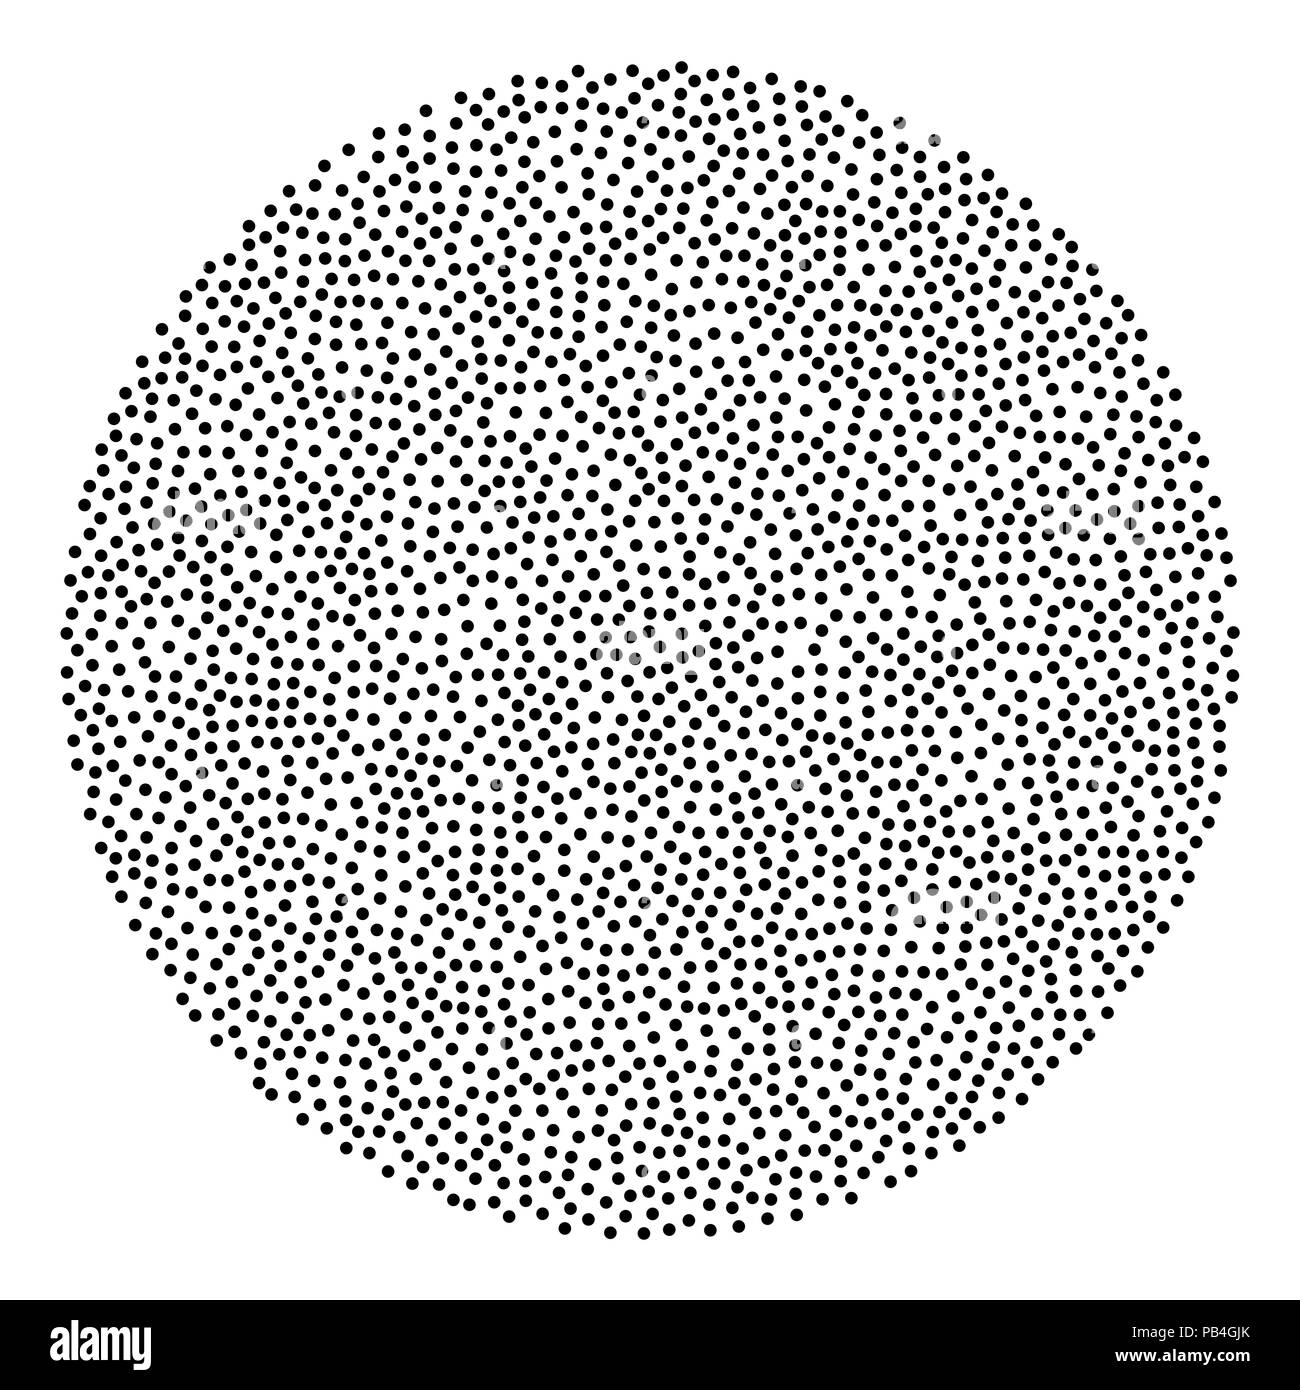 En arrière-plan en forme de cercle faite de points noirs. Zone circulaire faite de petites taches placés au hasard. Zone tachetée. Illustration isolé sur fond blanc. Banque D'Images